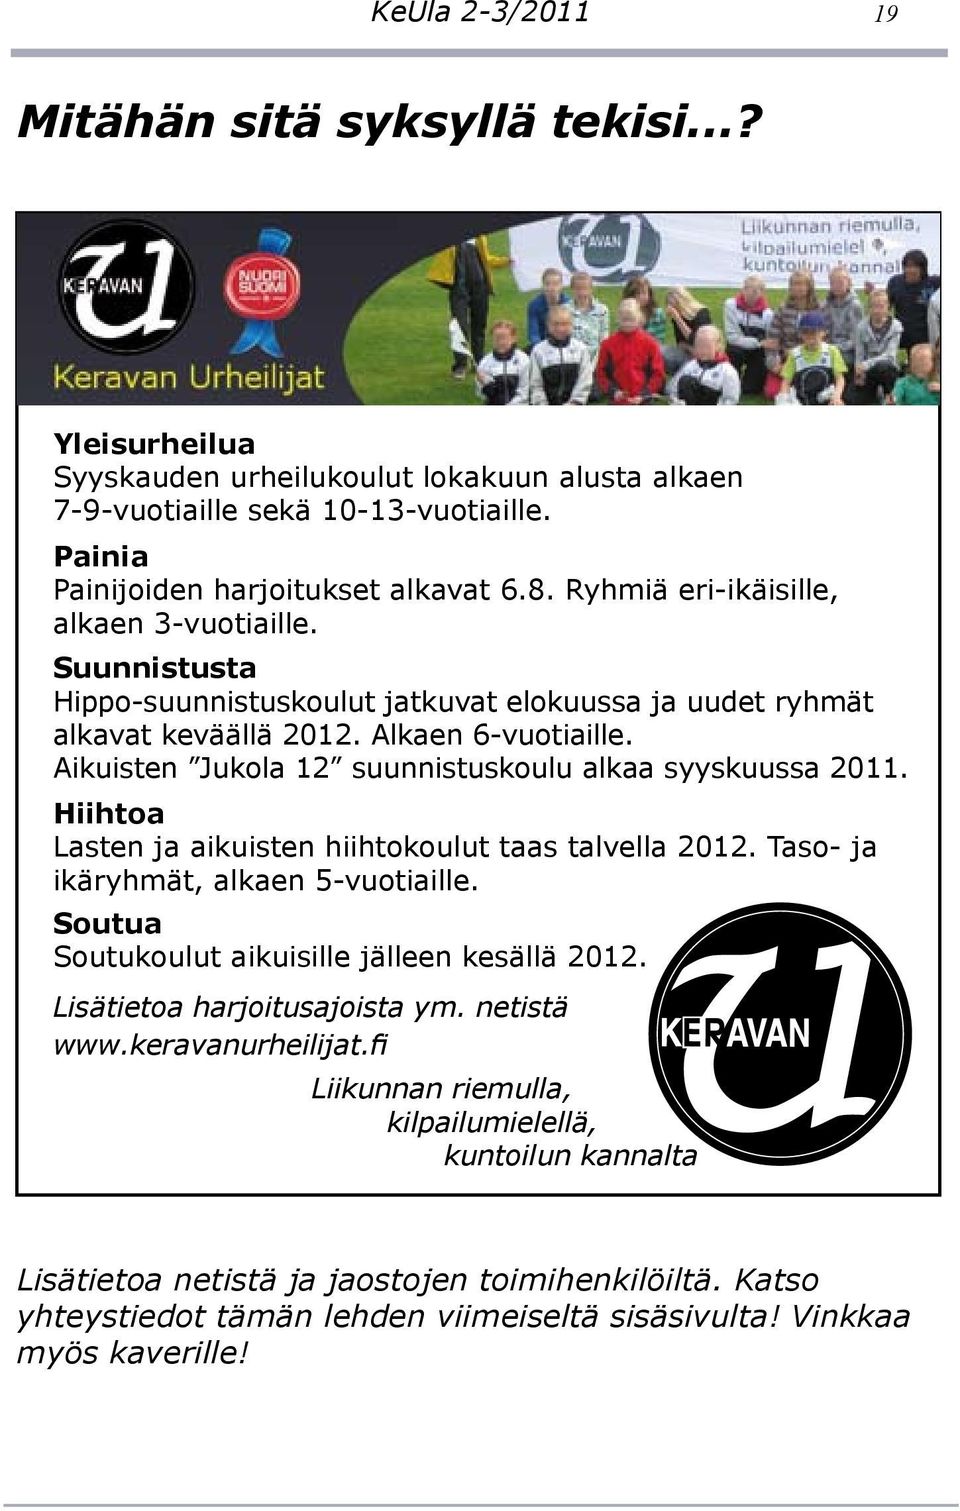 Aikuisten Jukola 12 suunnistuskoulu alkaa syyskuussa 2011. Hiihtoa Lasten ja aikuisten hiihtokoulut taas talvella 2012. Taso- ja ikäryhmät, alkaen 5-vuotiaille.